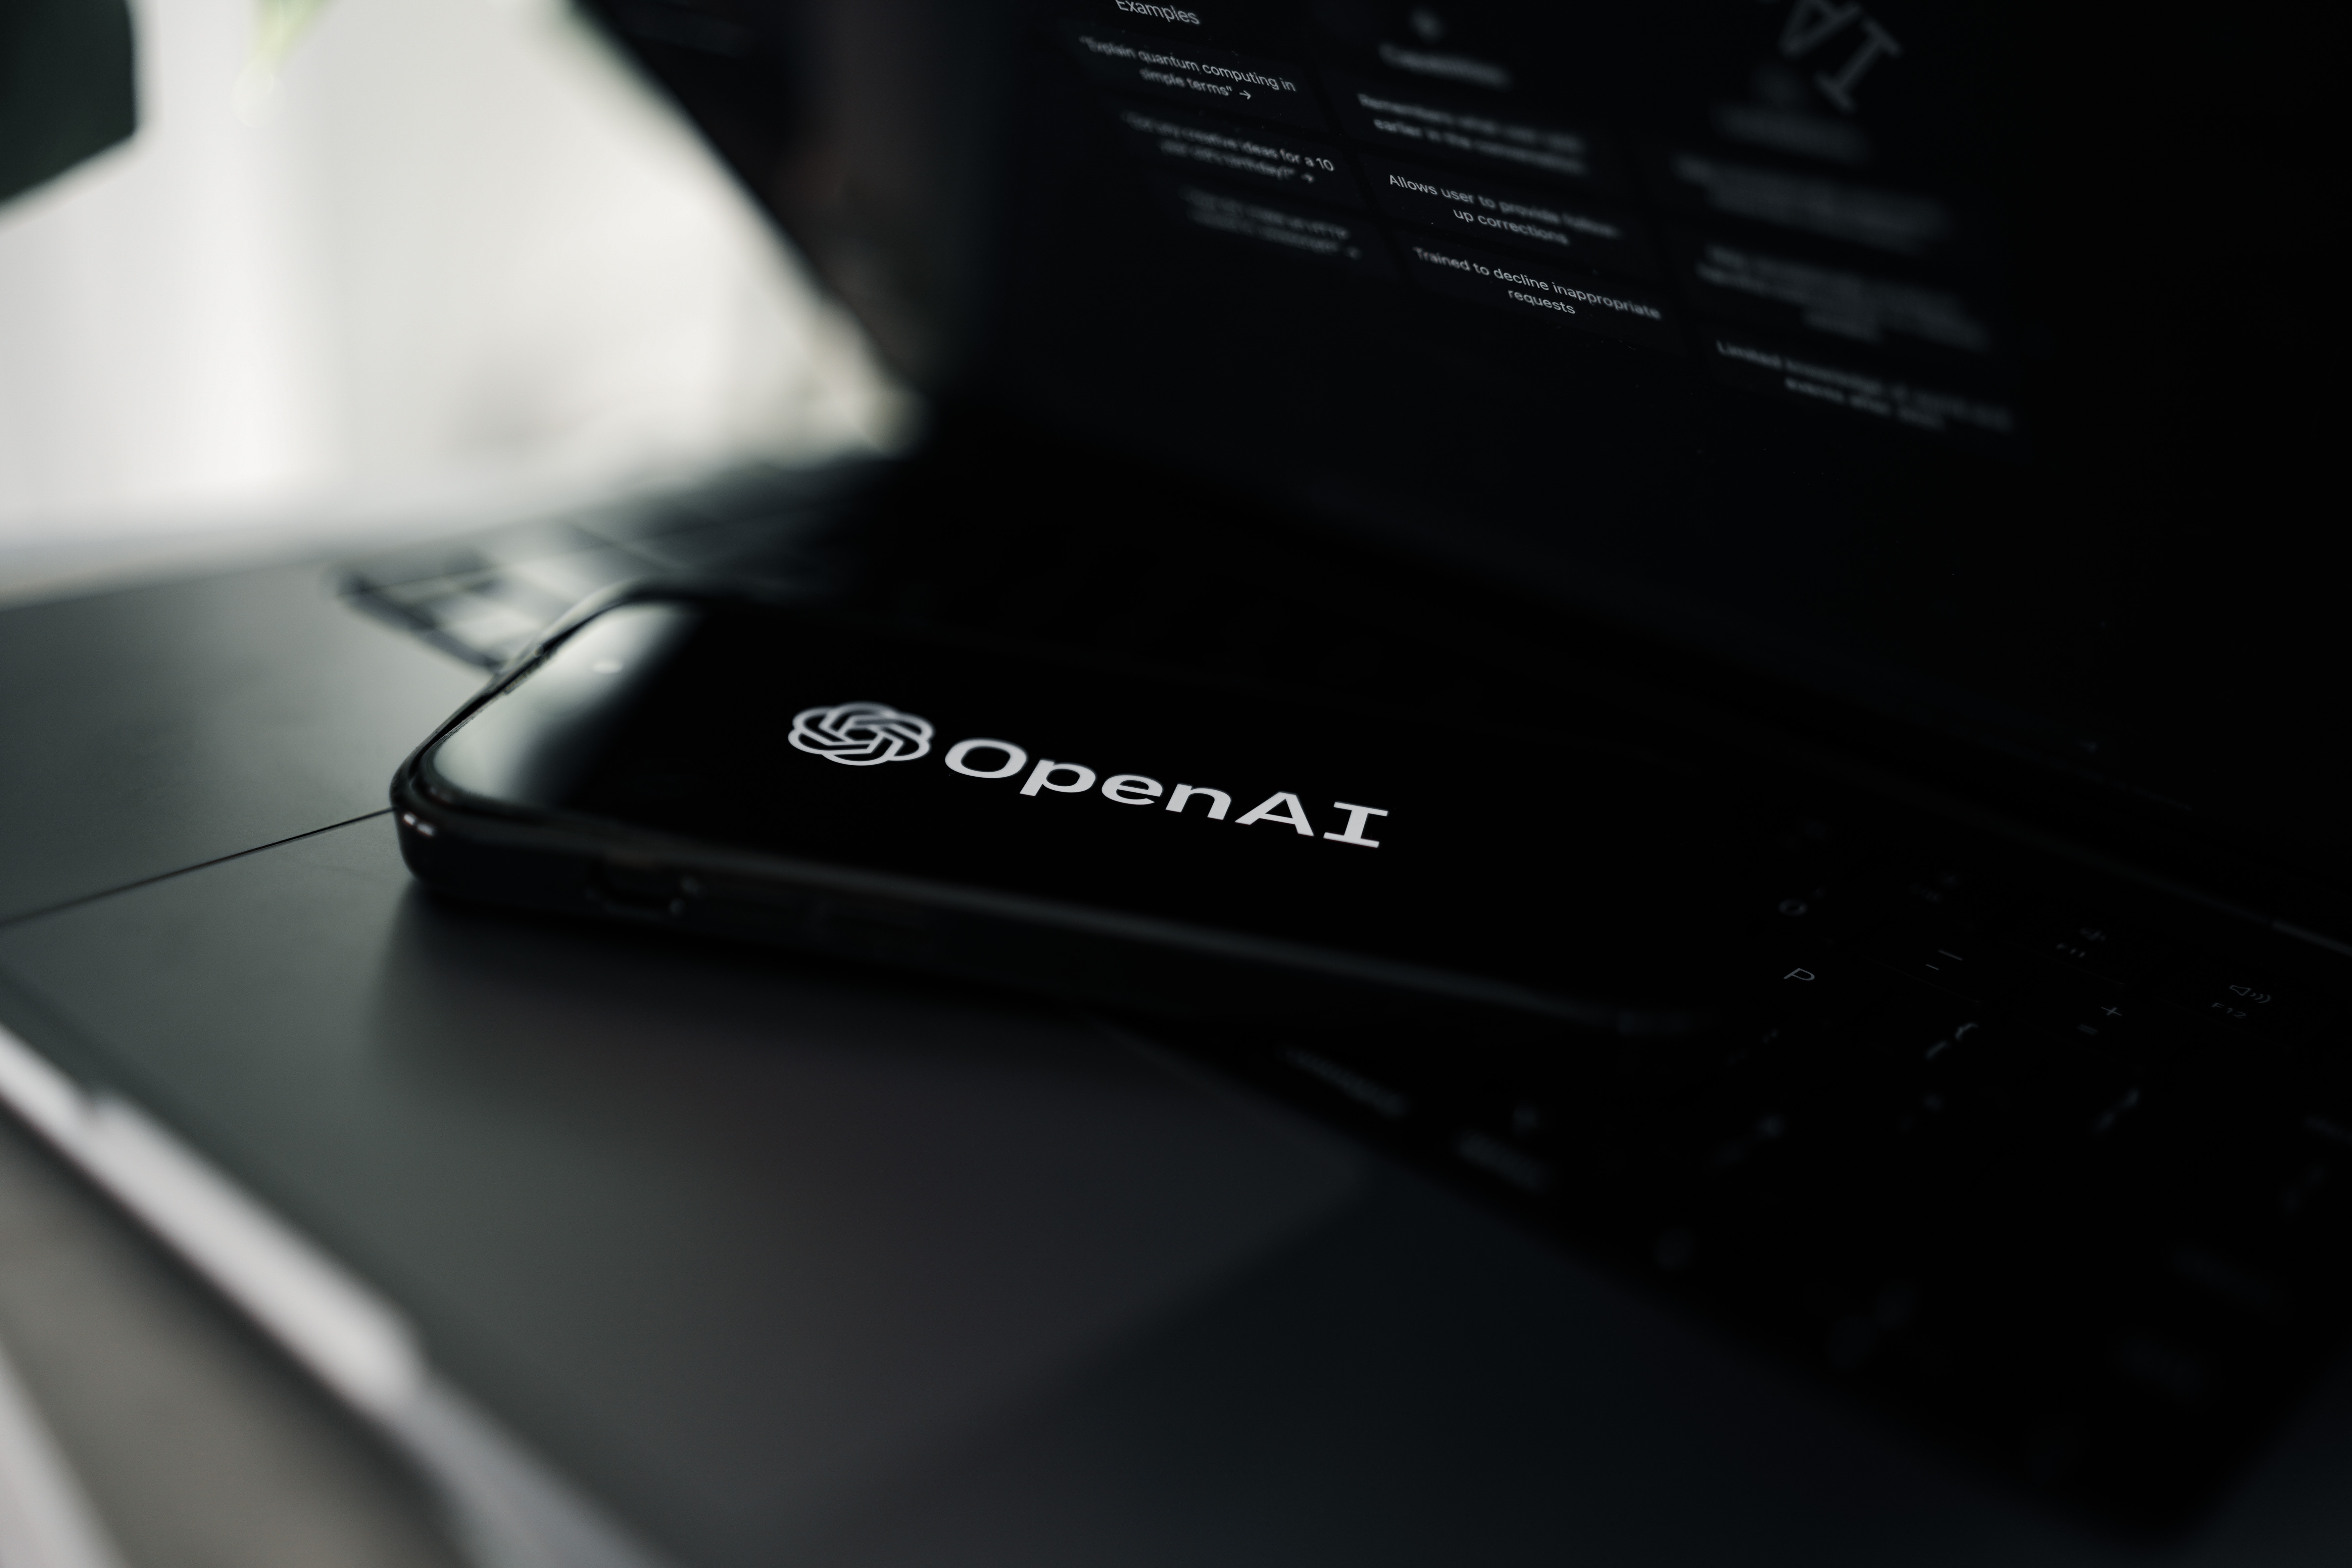 OpenAI a attribué la panne de ChatGPT à une attaque DDoS. Des pirates informatiques pro-russes du groupe Anonymous Sudan ont revendiqué la responsabilité de cette attaque.